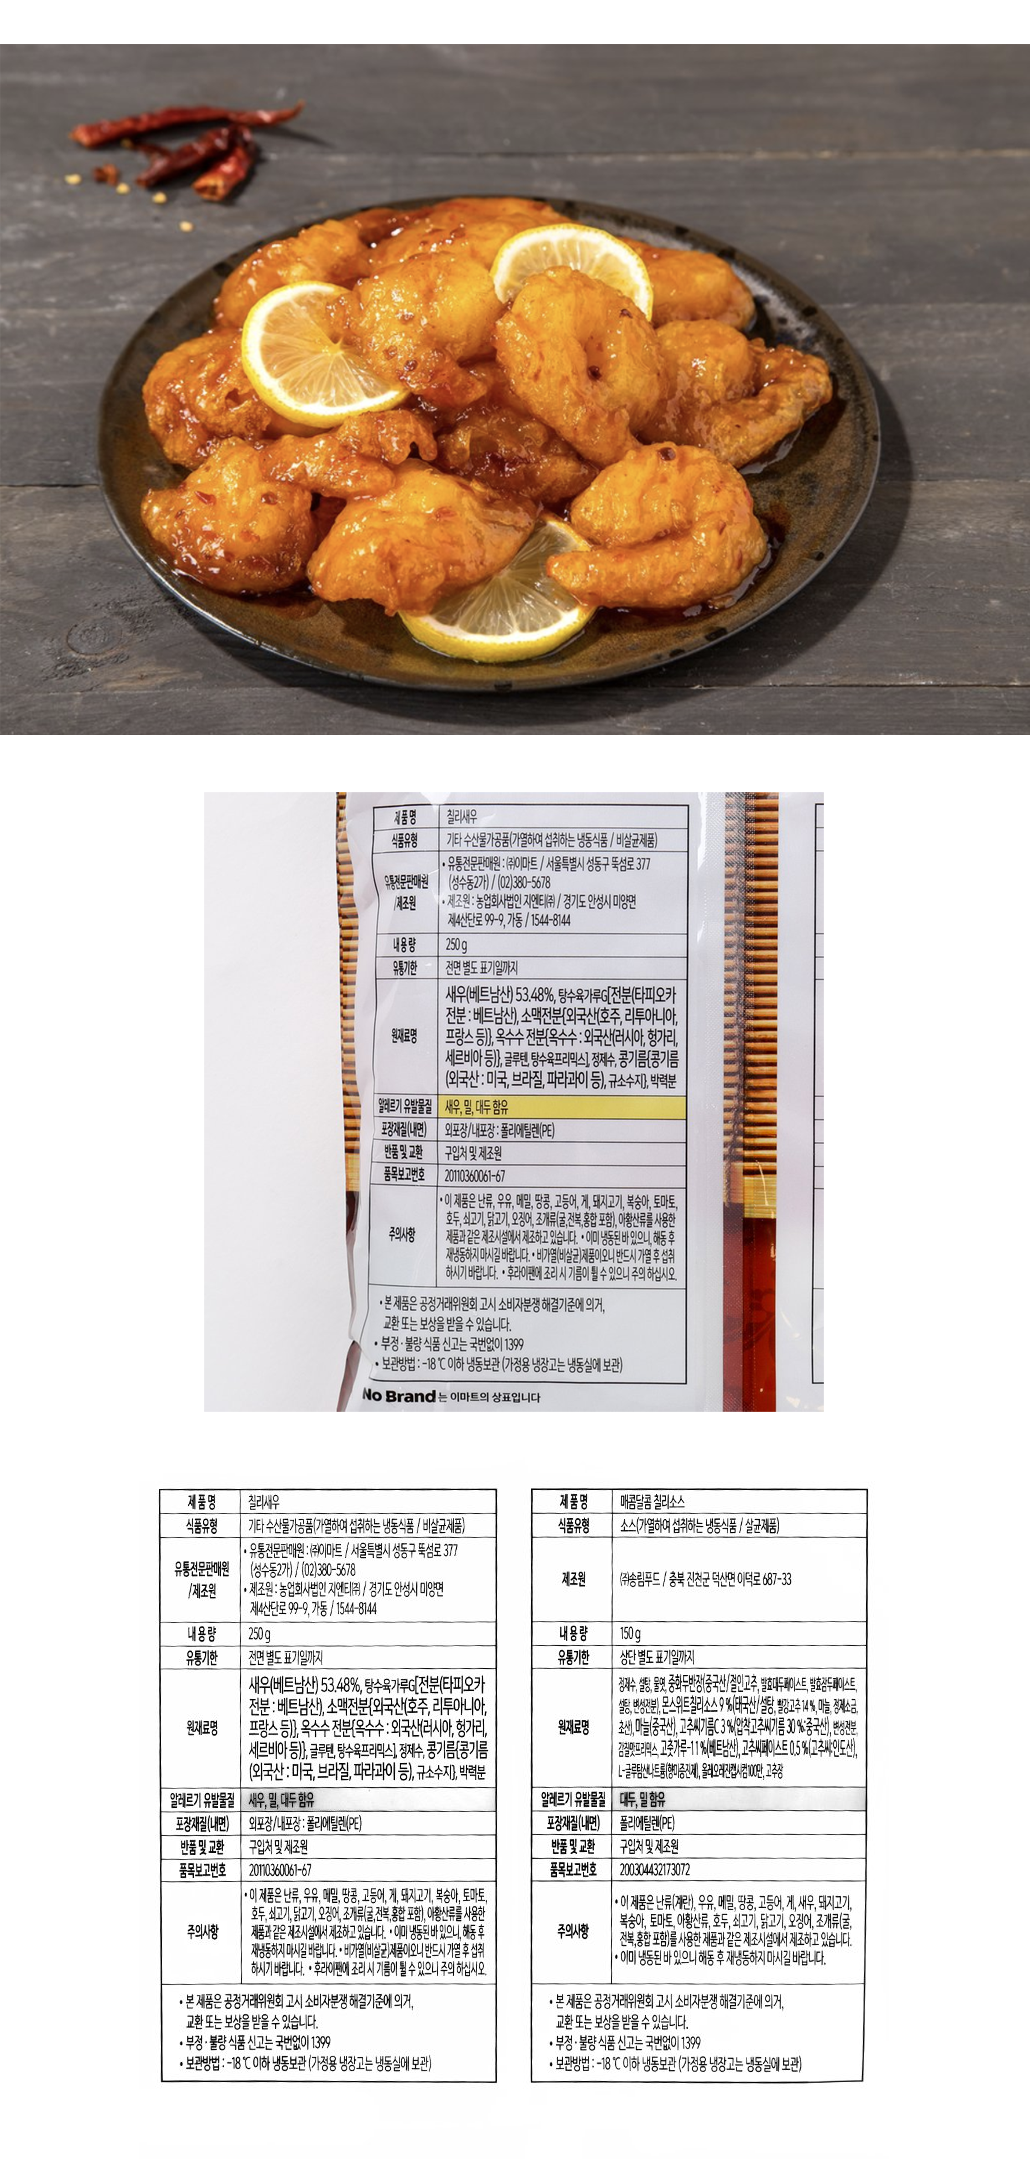 韓國食品-[No Brand] 甜辣醬脆炸蝦 400g